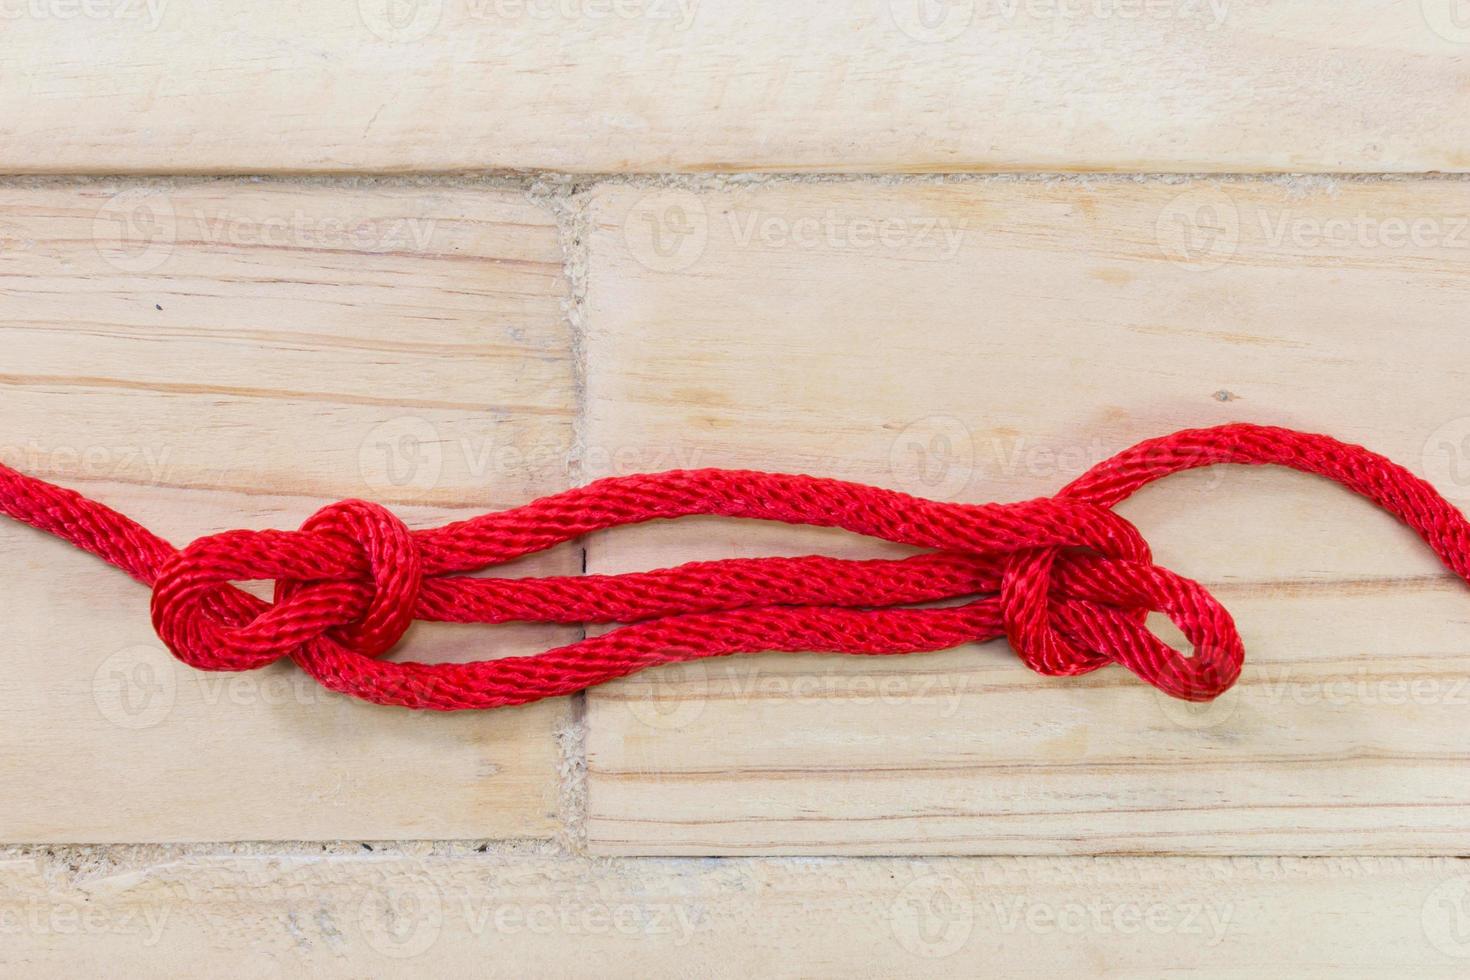 sheepshank knoop gemaakt met rood touw op houten achtergrond. foto